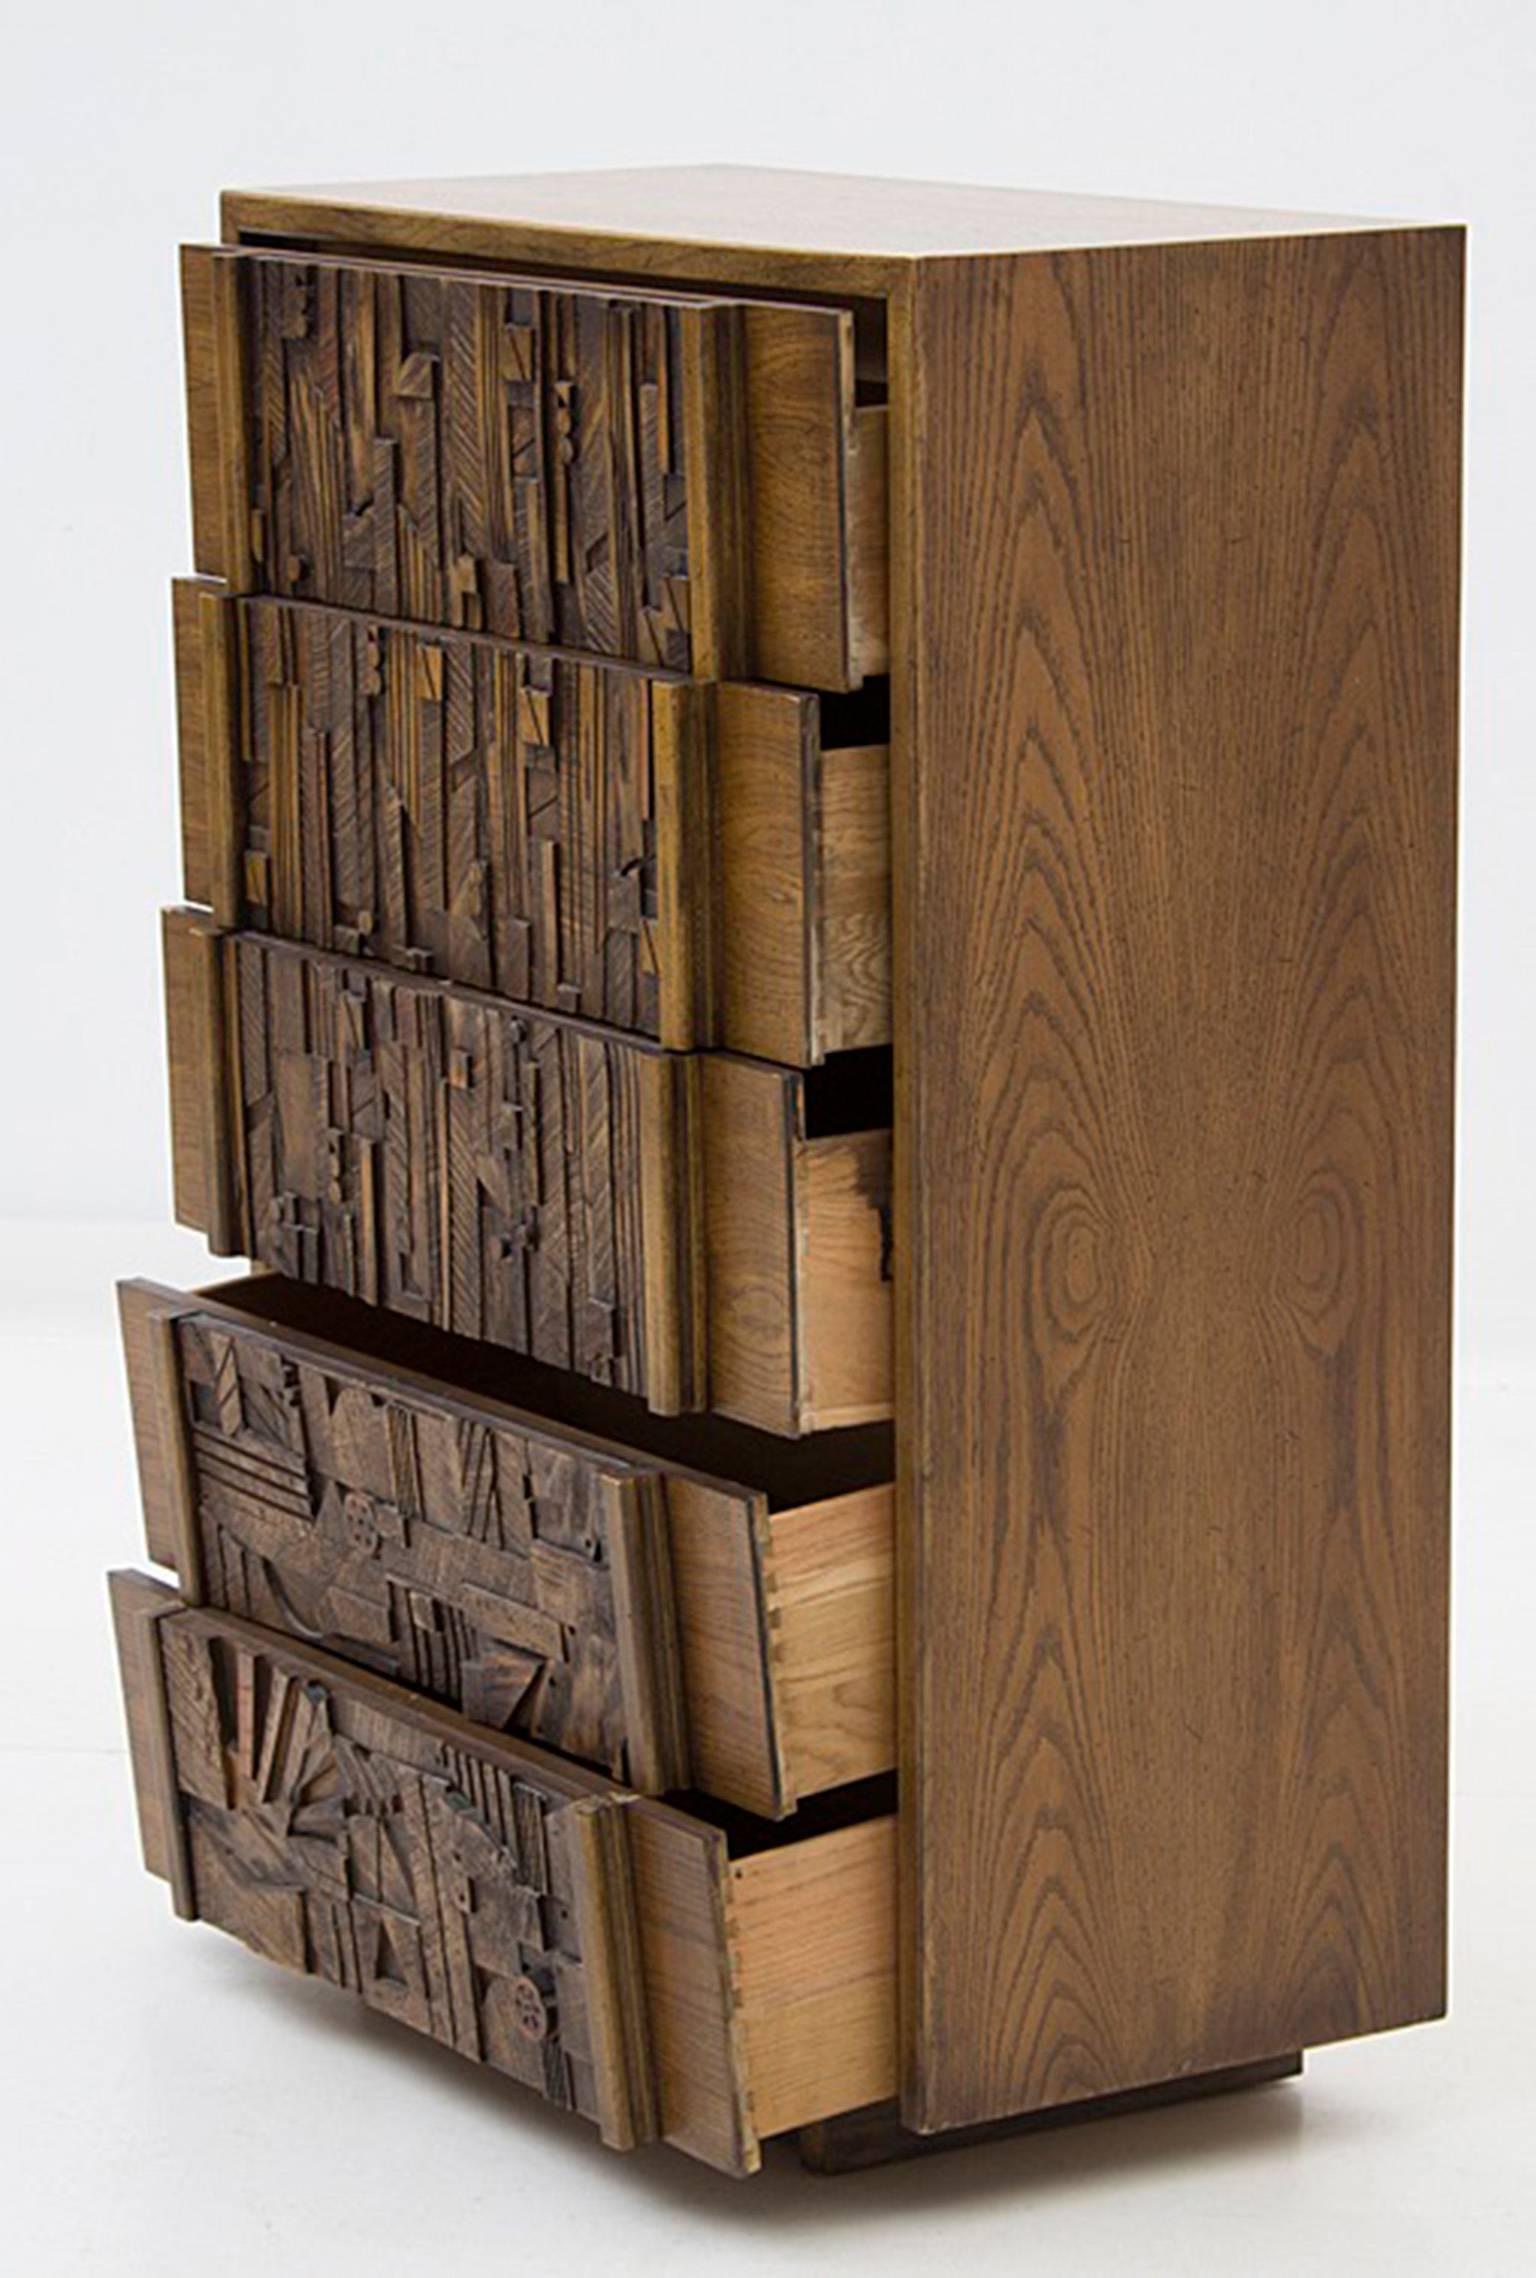 Brutalistische Kommode aus Eiche mit fünf Schubladen, entworfen von Lane Furniture. Die Kommode besteht aus einem Eichenholzgehäuse mit auf Gehrung geschnittener Eckkonstruktion, das fünf Schubladen mit asymmetrisch zusammengesetzten Holzfronten im